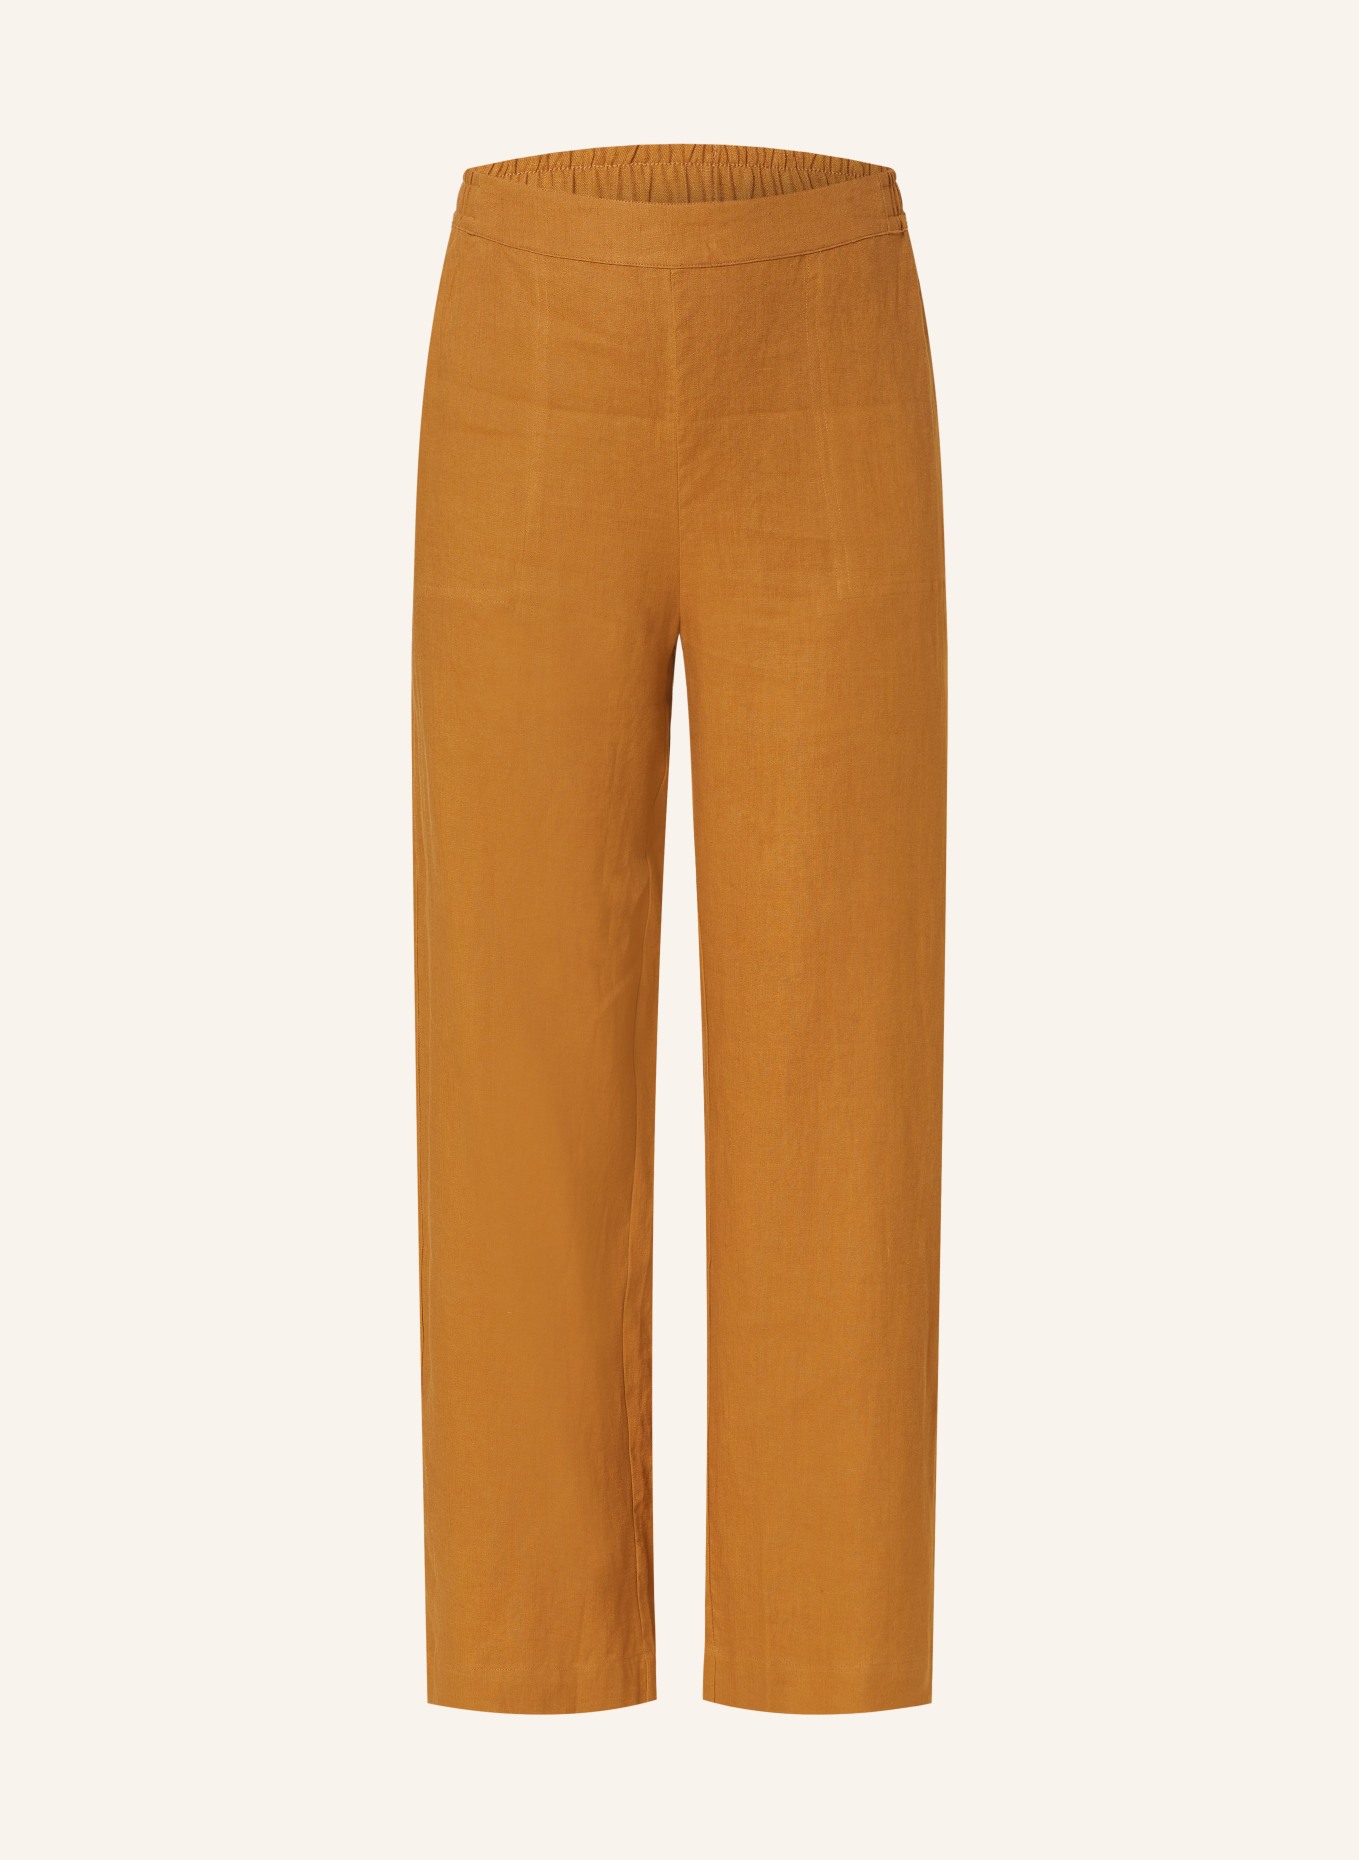 MAERZ MUENCHEN Linen trousers, Color: COGNAC (Image 1)